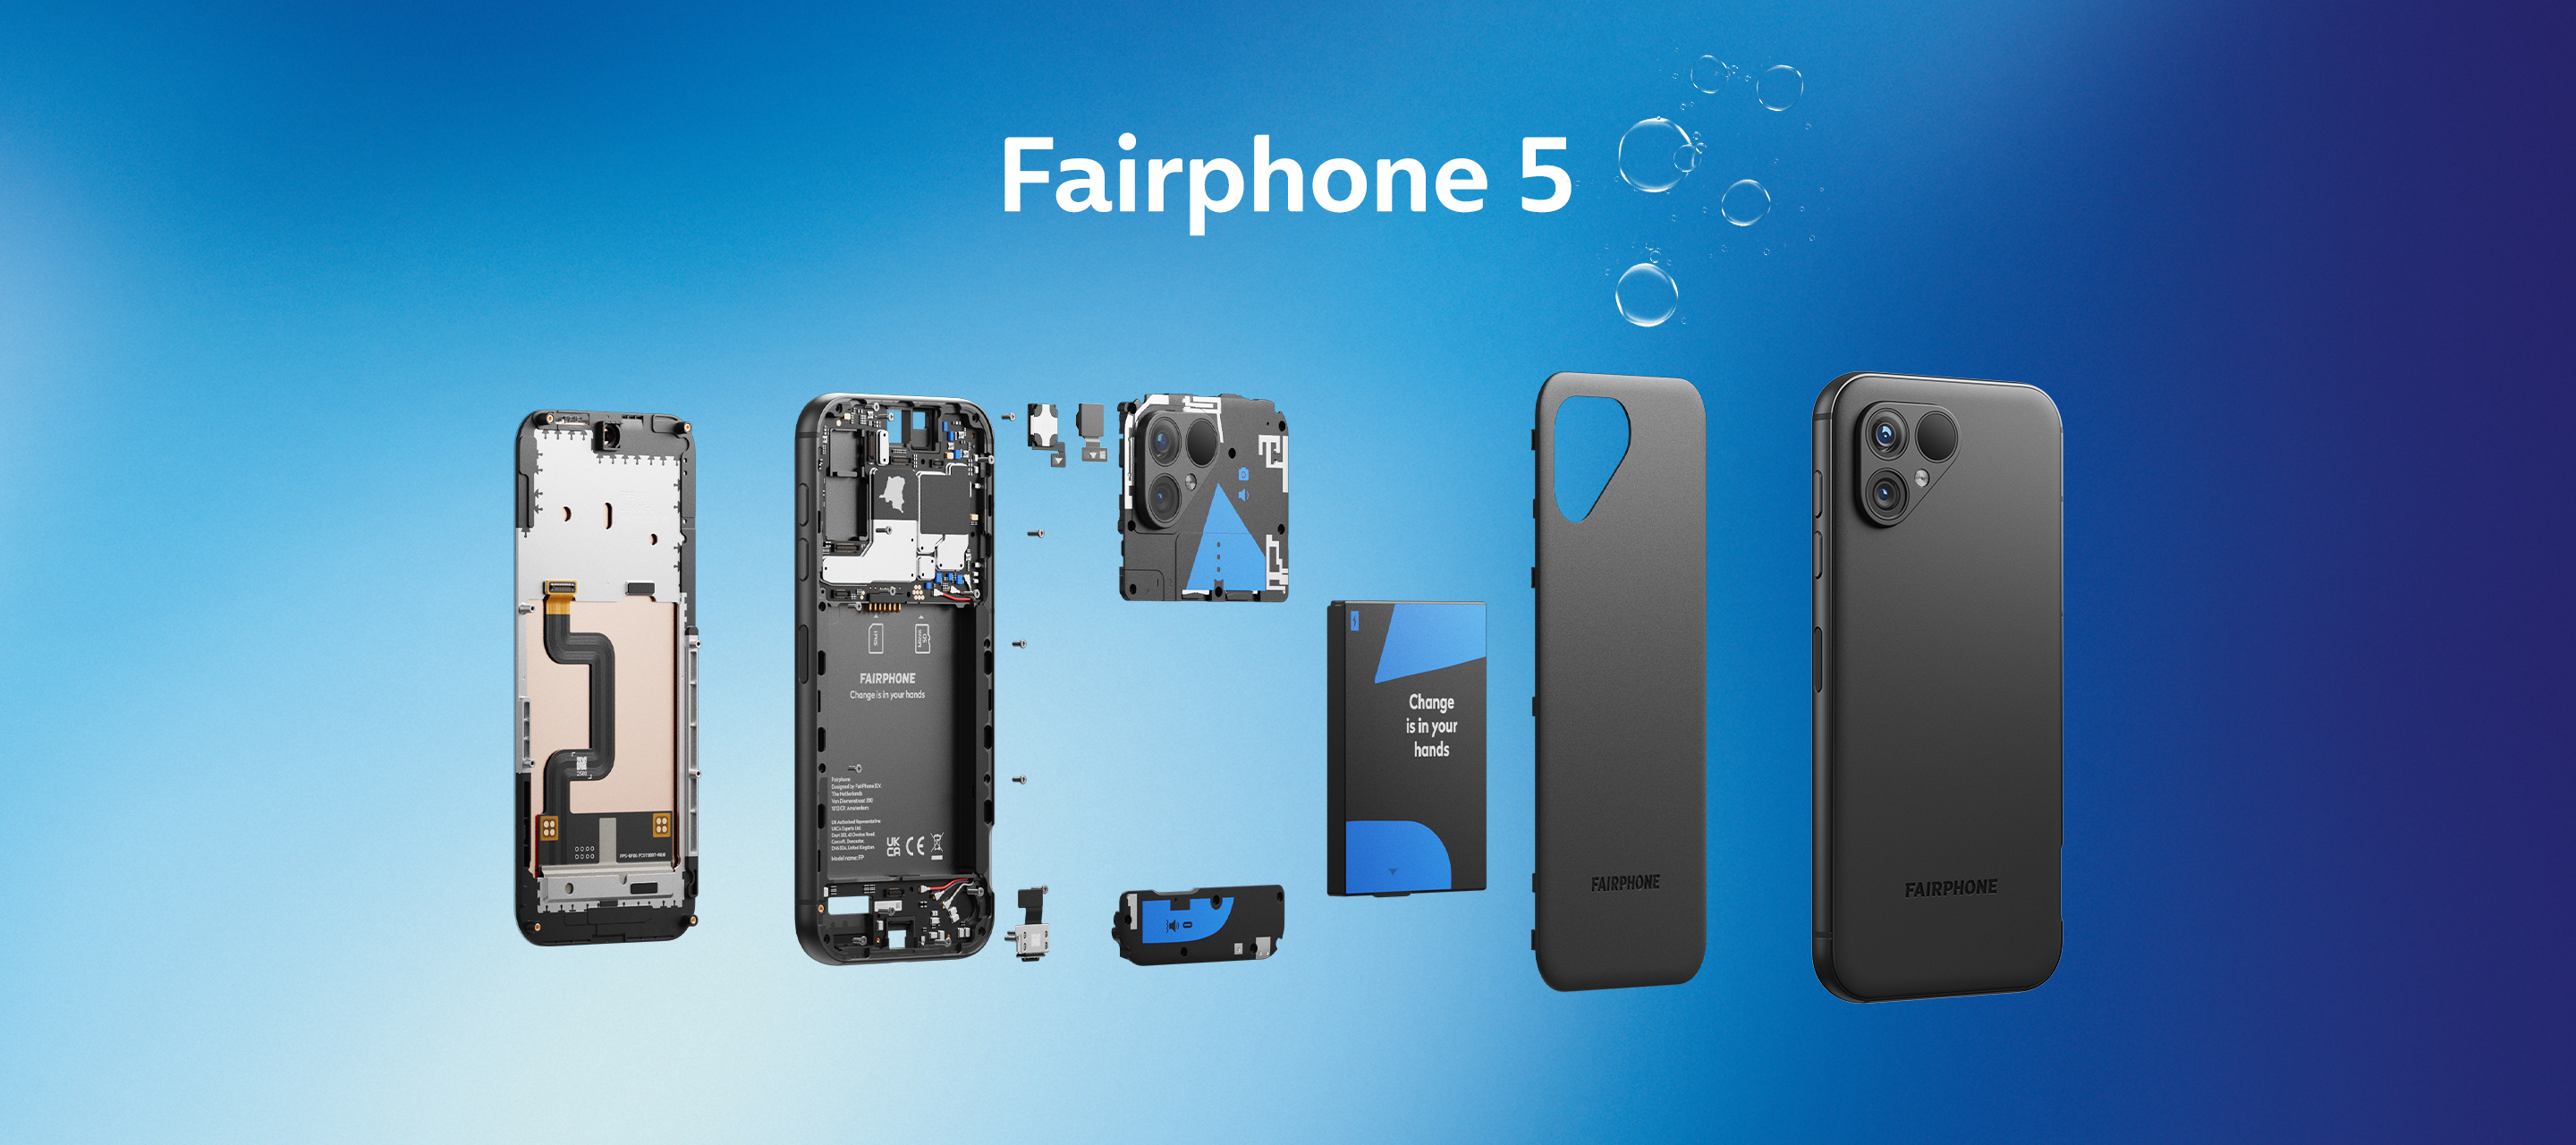 Das Fairphone 5 stellt sich vor – Vorverkauf bei O₂